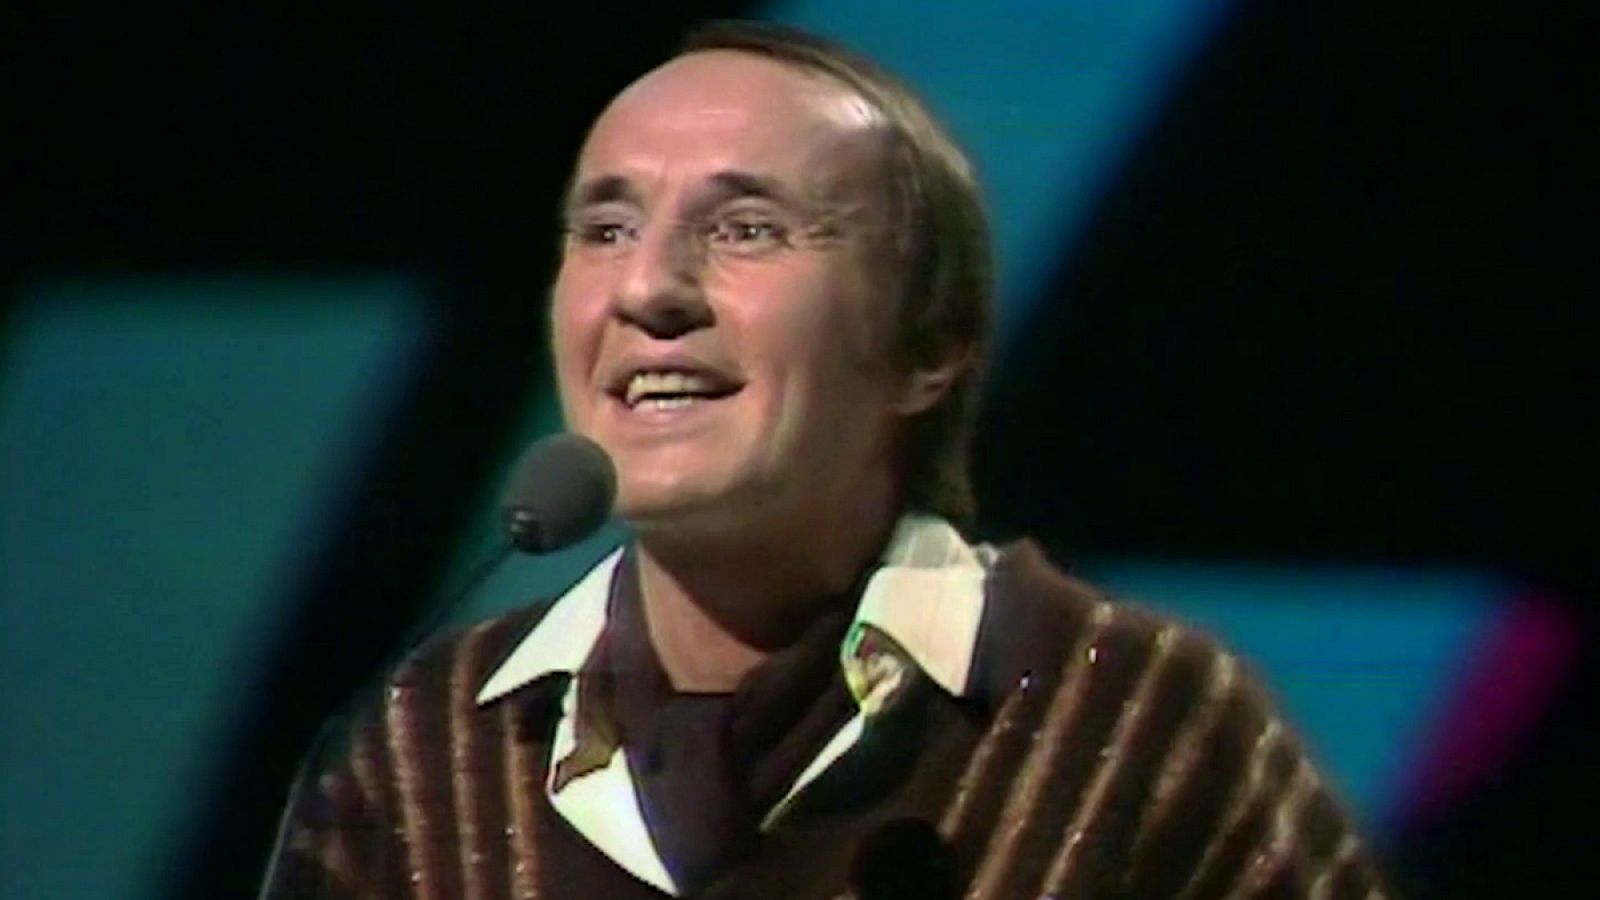 Festival de Eurovisión 1977 - Micky cantó "Enséñame a cantar"